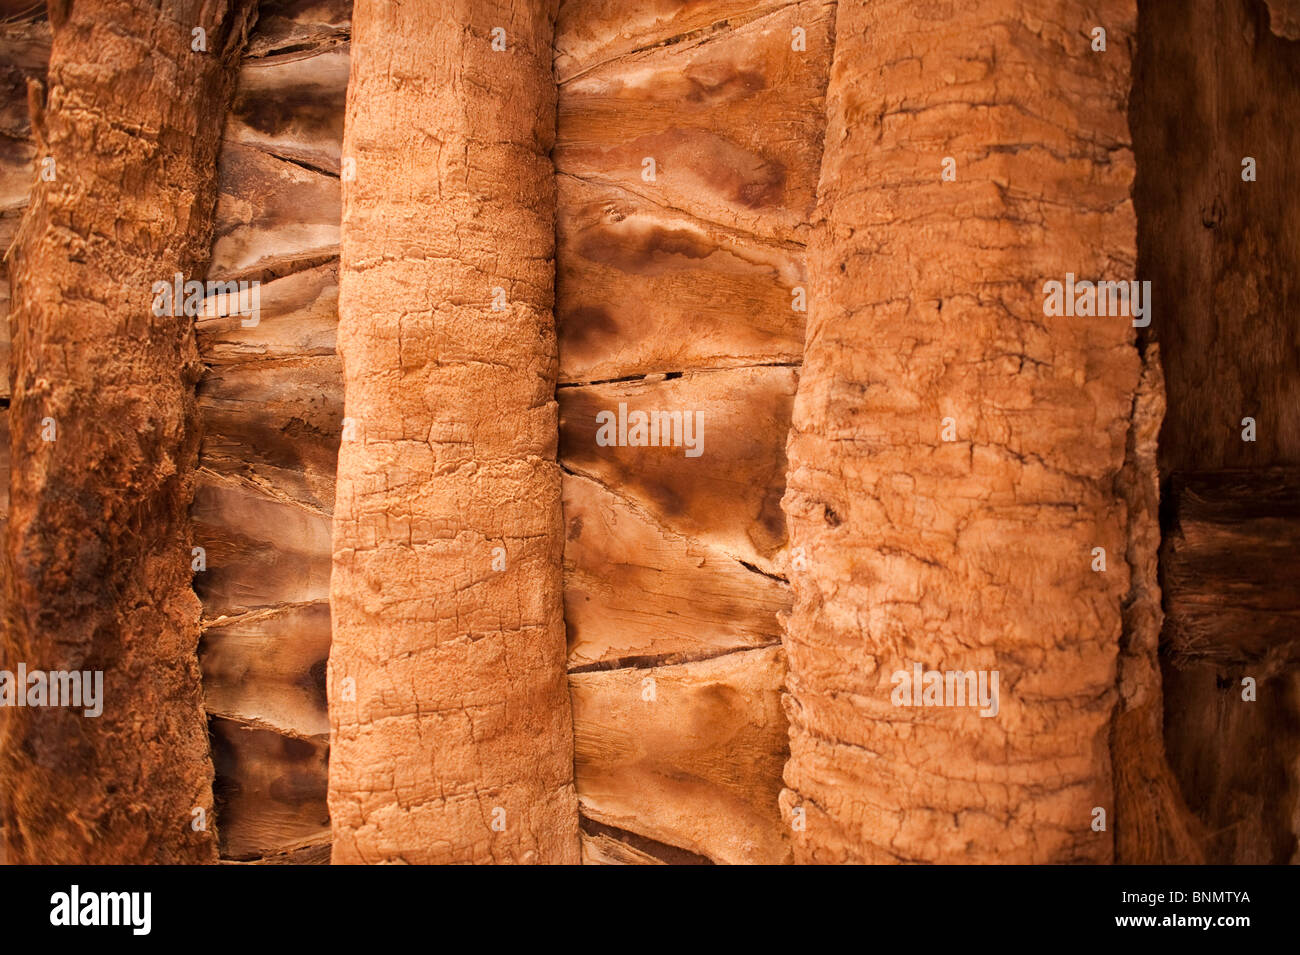 Palm, cadre traditionnel de Figuig, province de Figuig, région orientale, le Maroc. Banque D'Images